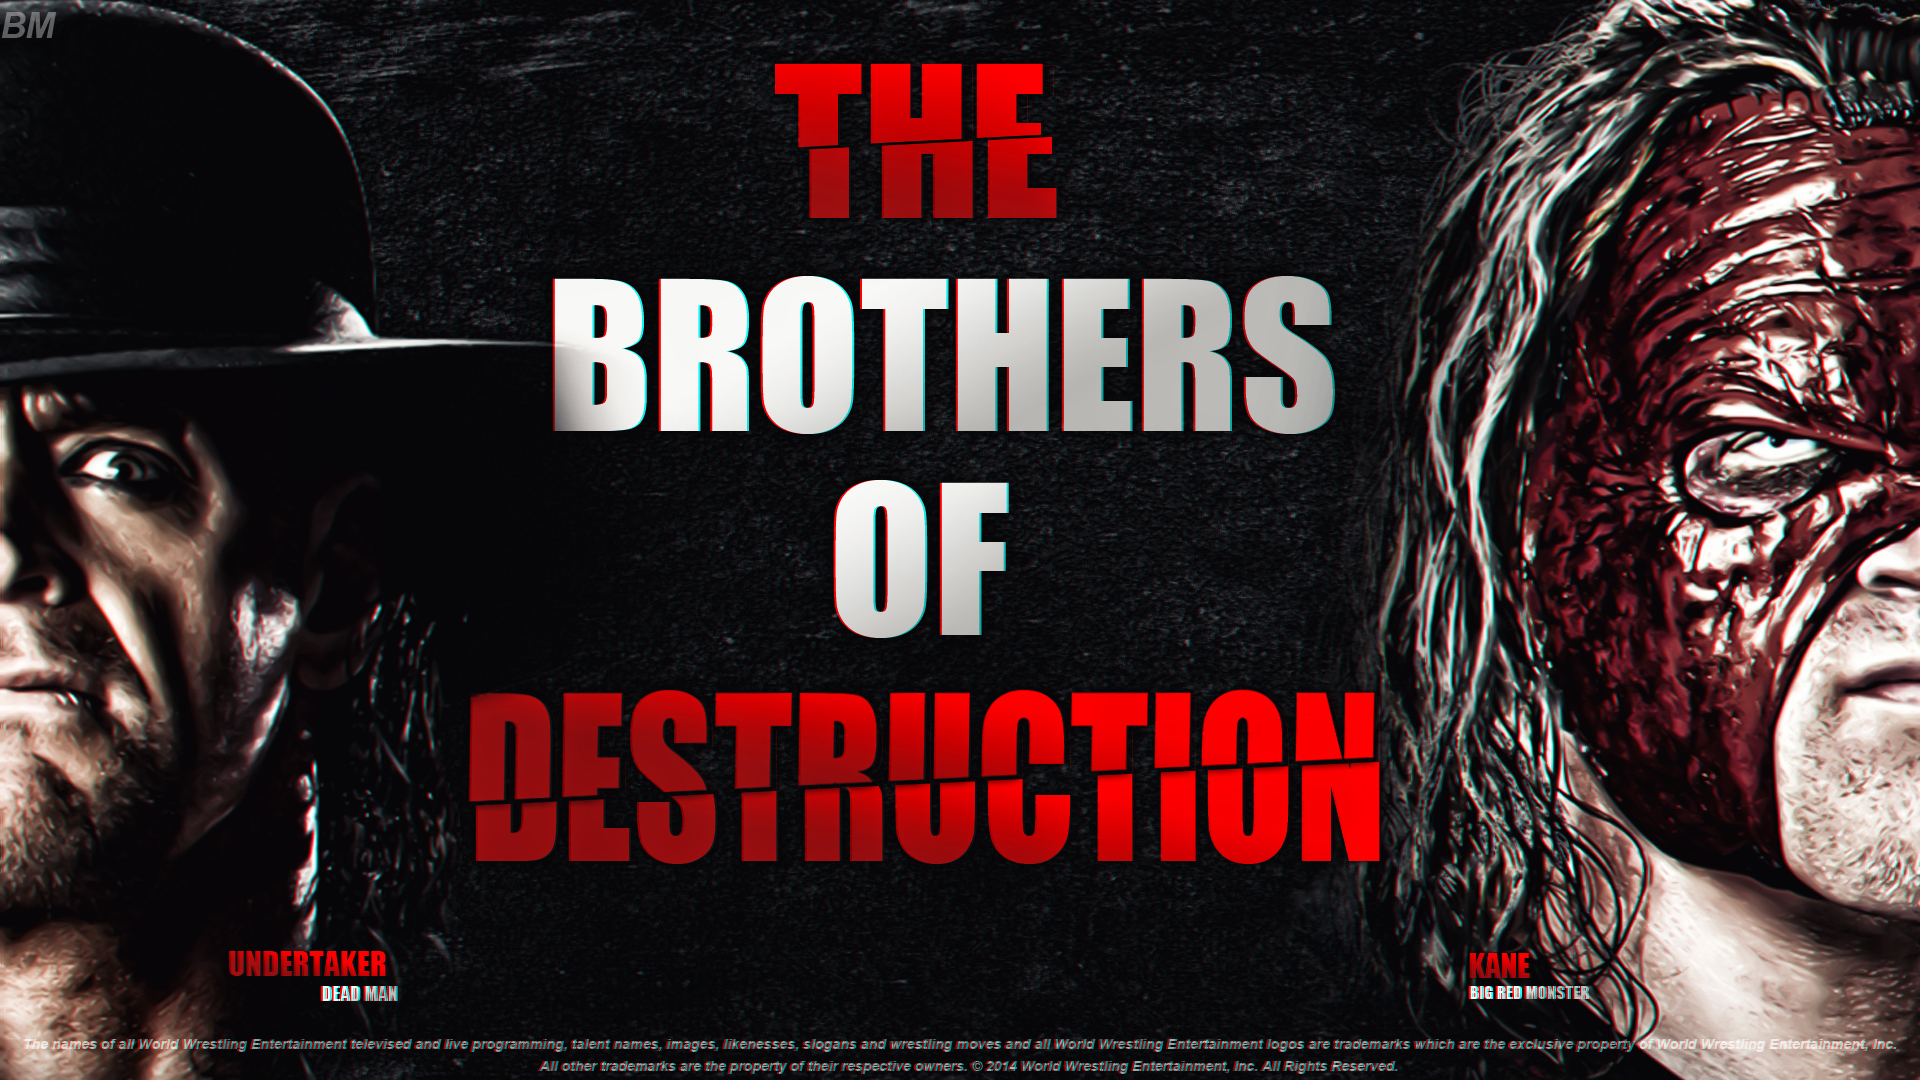 Brothers Of Destruction Wwe HD By Bm Desugner Designer On